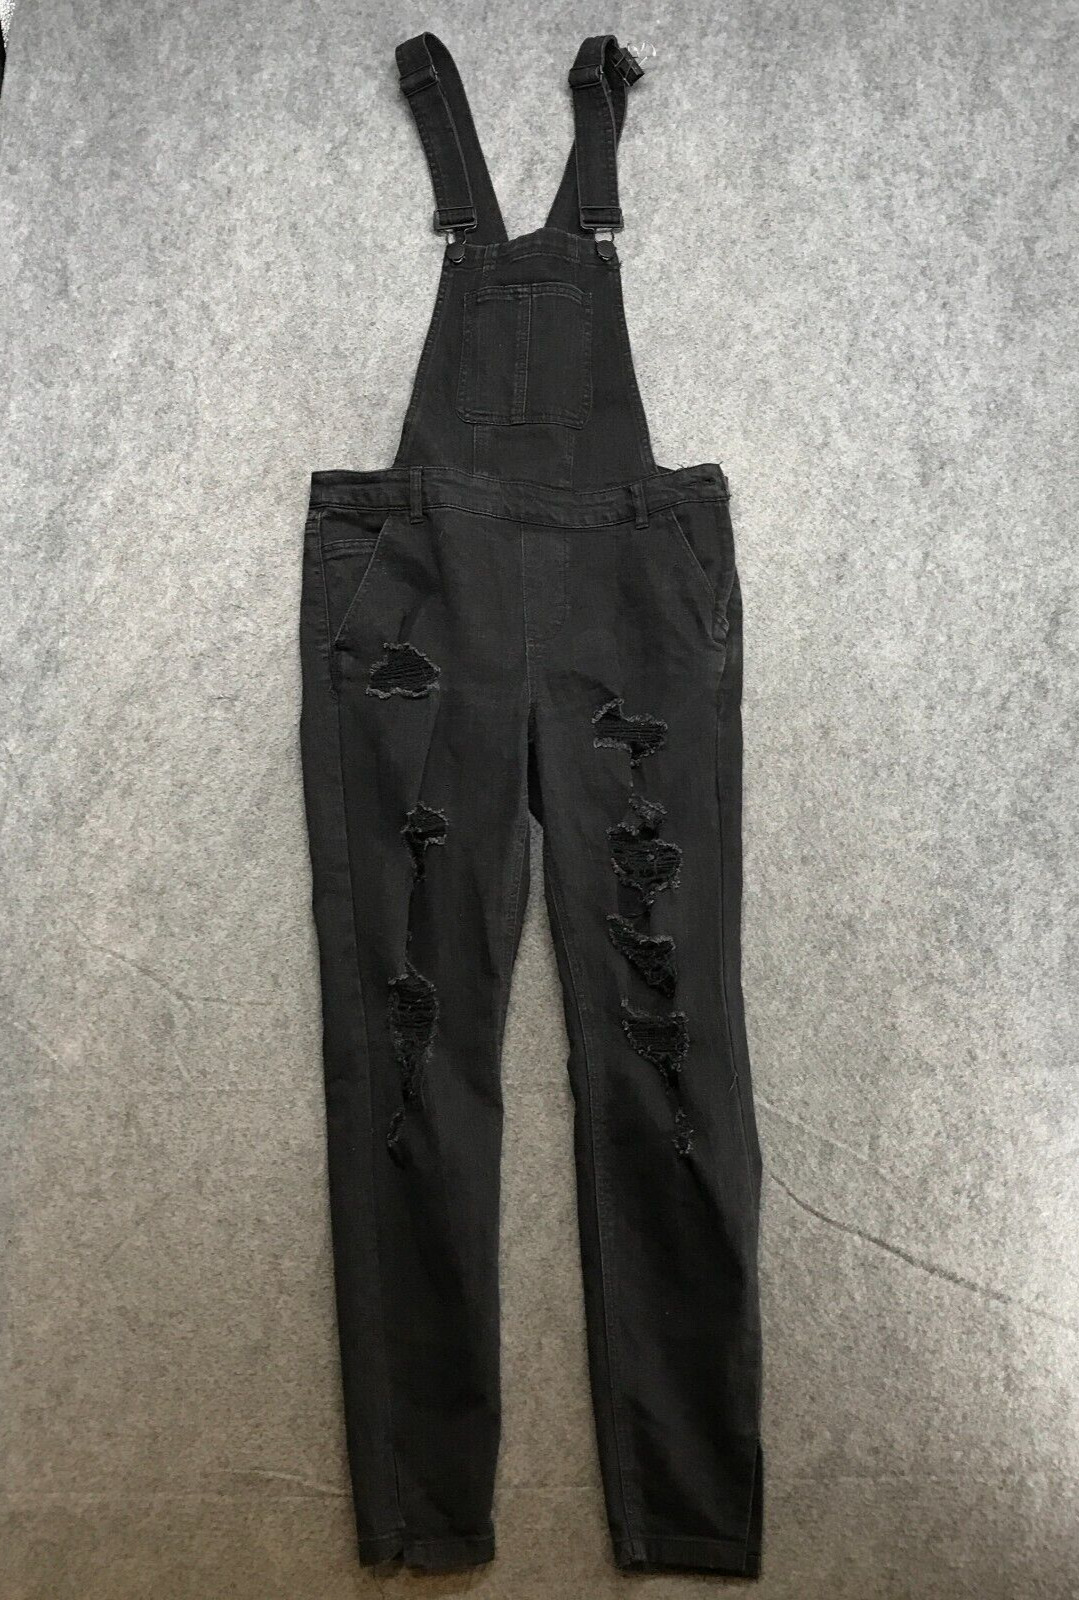 Dollhouse Overalls Jeans Juniors Size 9 Black Den… - image 1